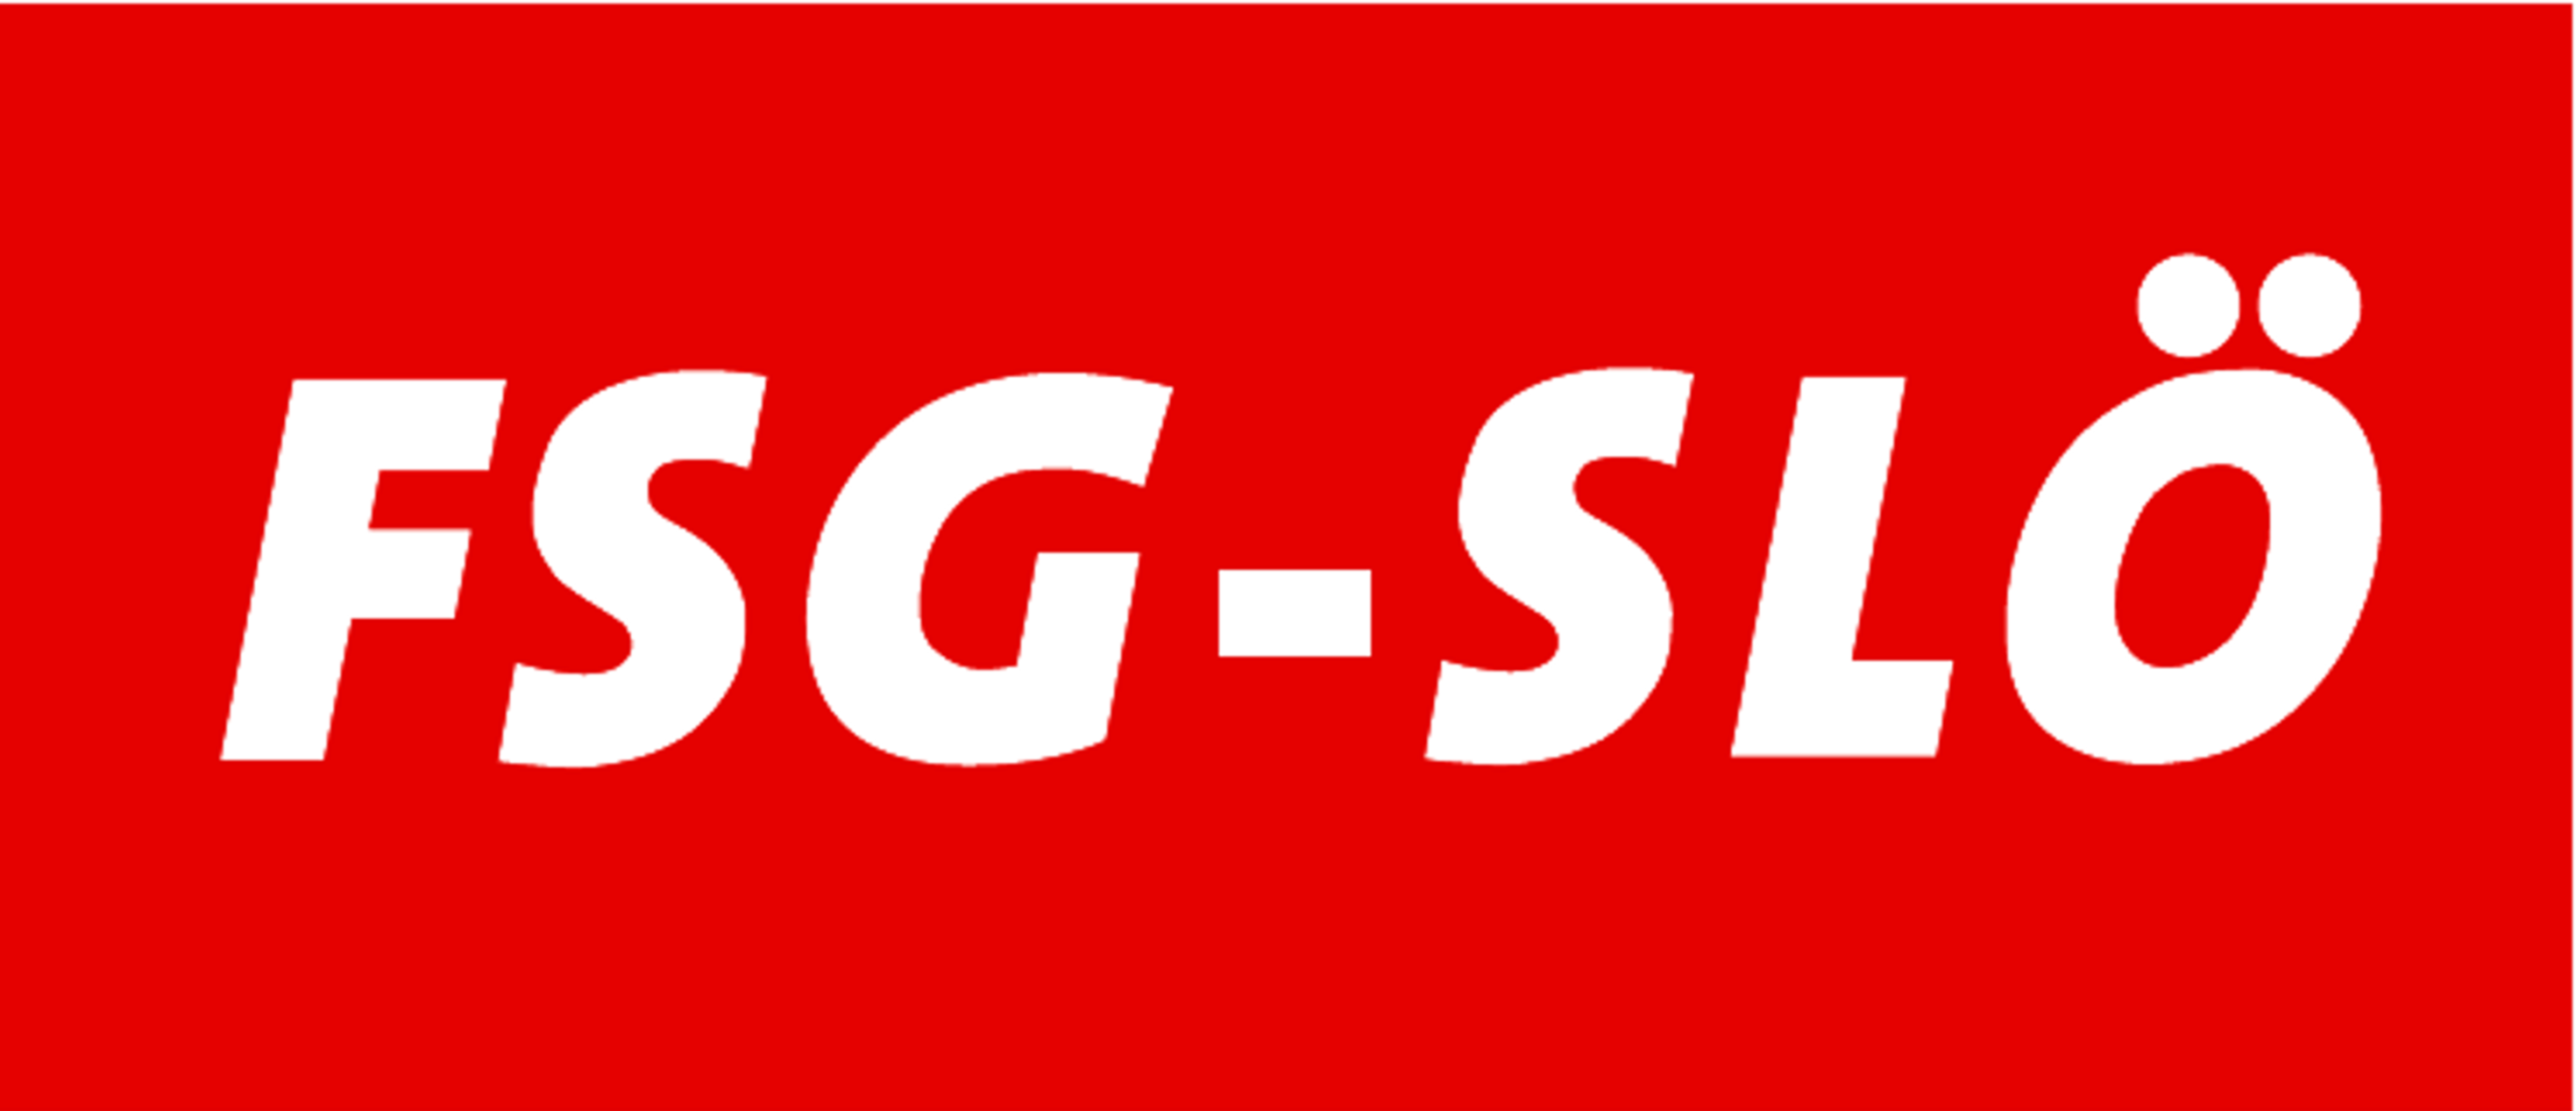 FSG SLOE Logo öhne GÖD ohneKärnten 15x65cm